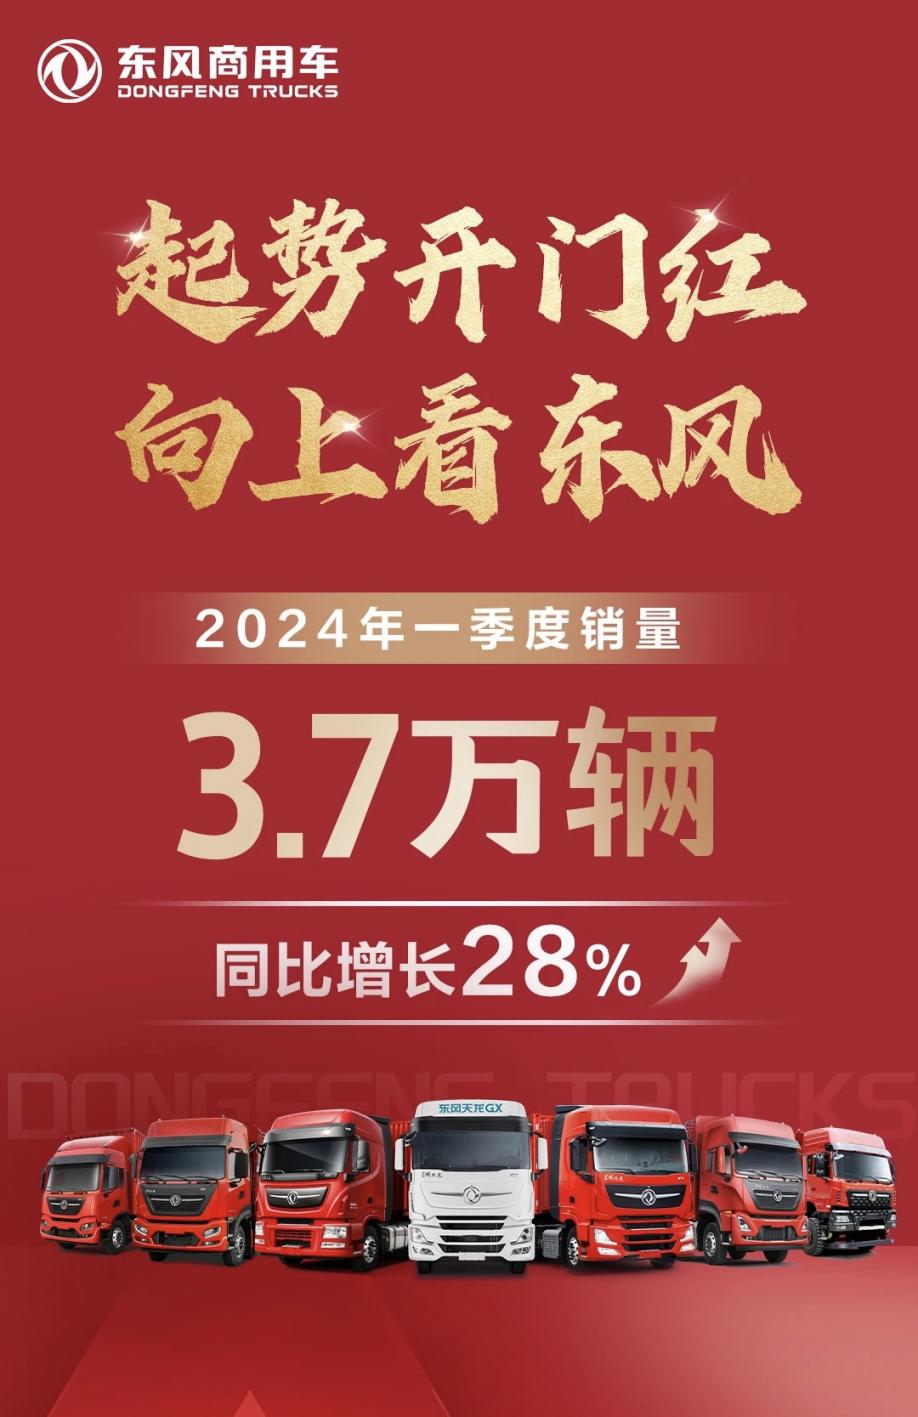 东风公司实现首季开门红 销售66万辆 同比增长28.3%